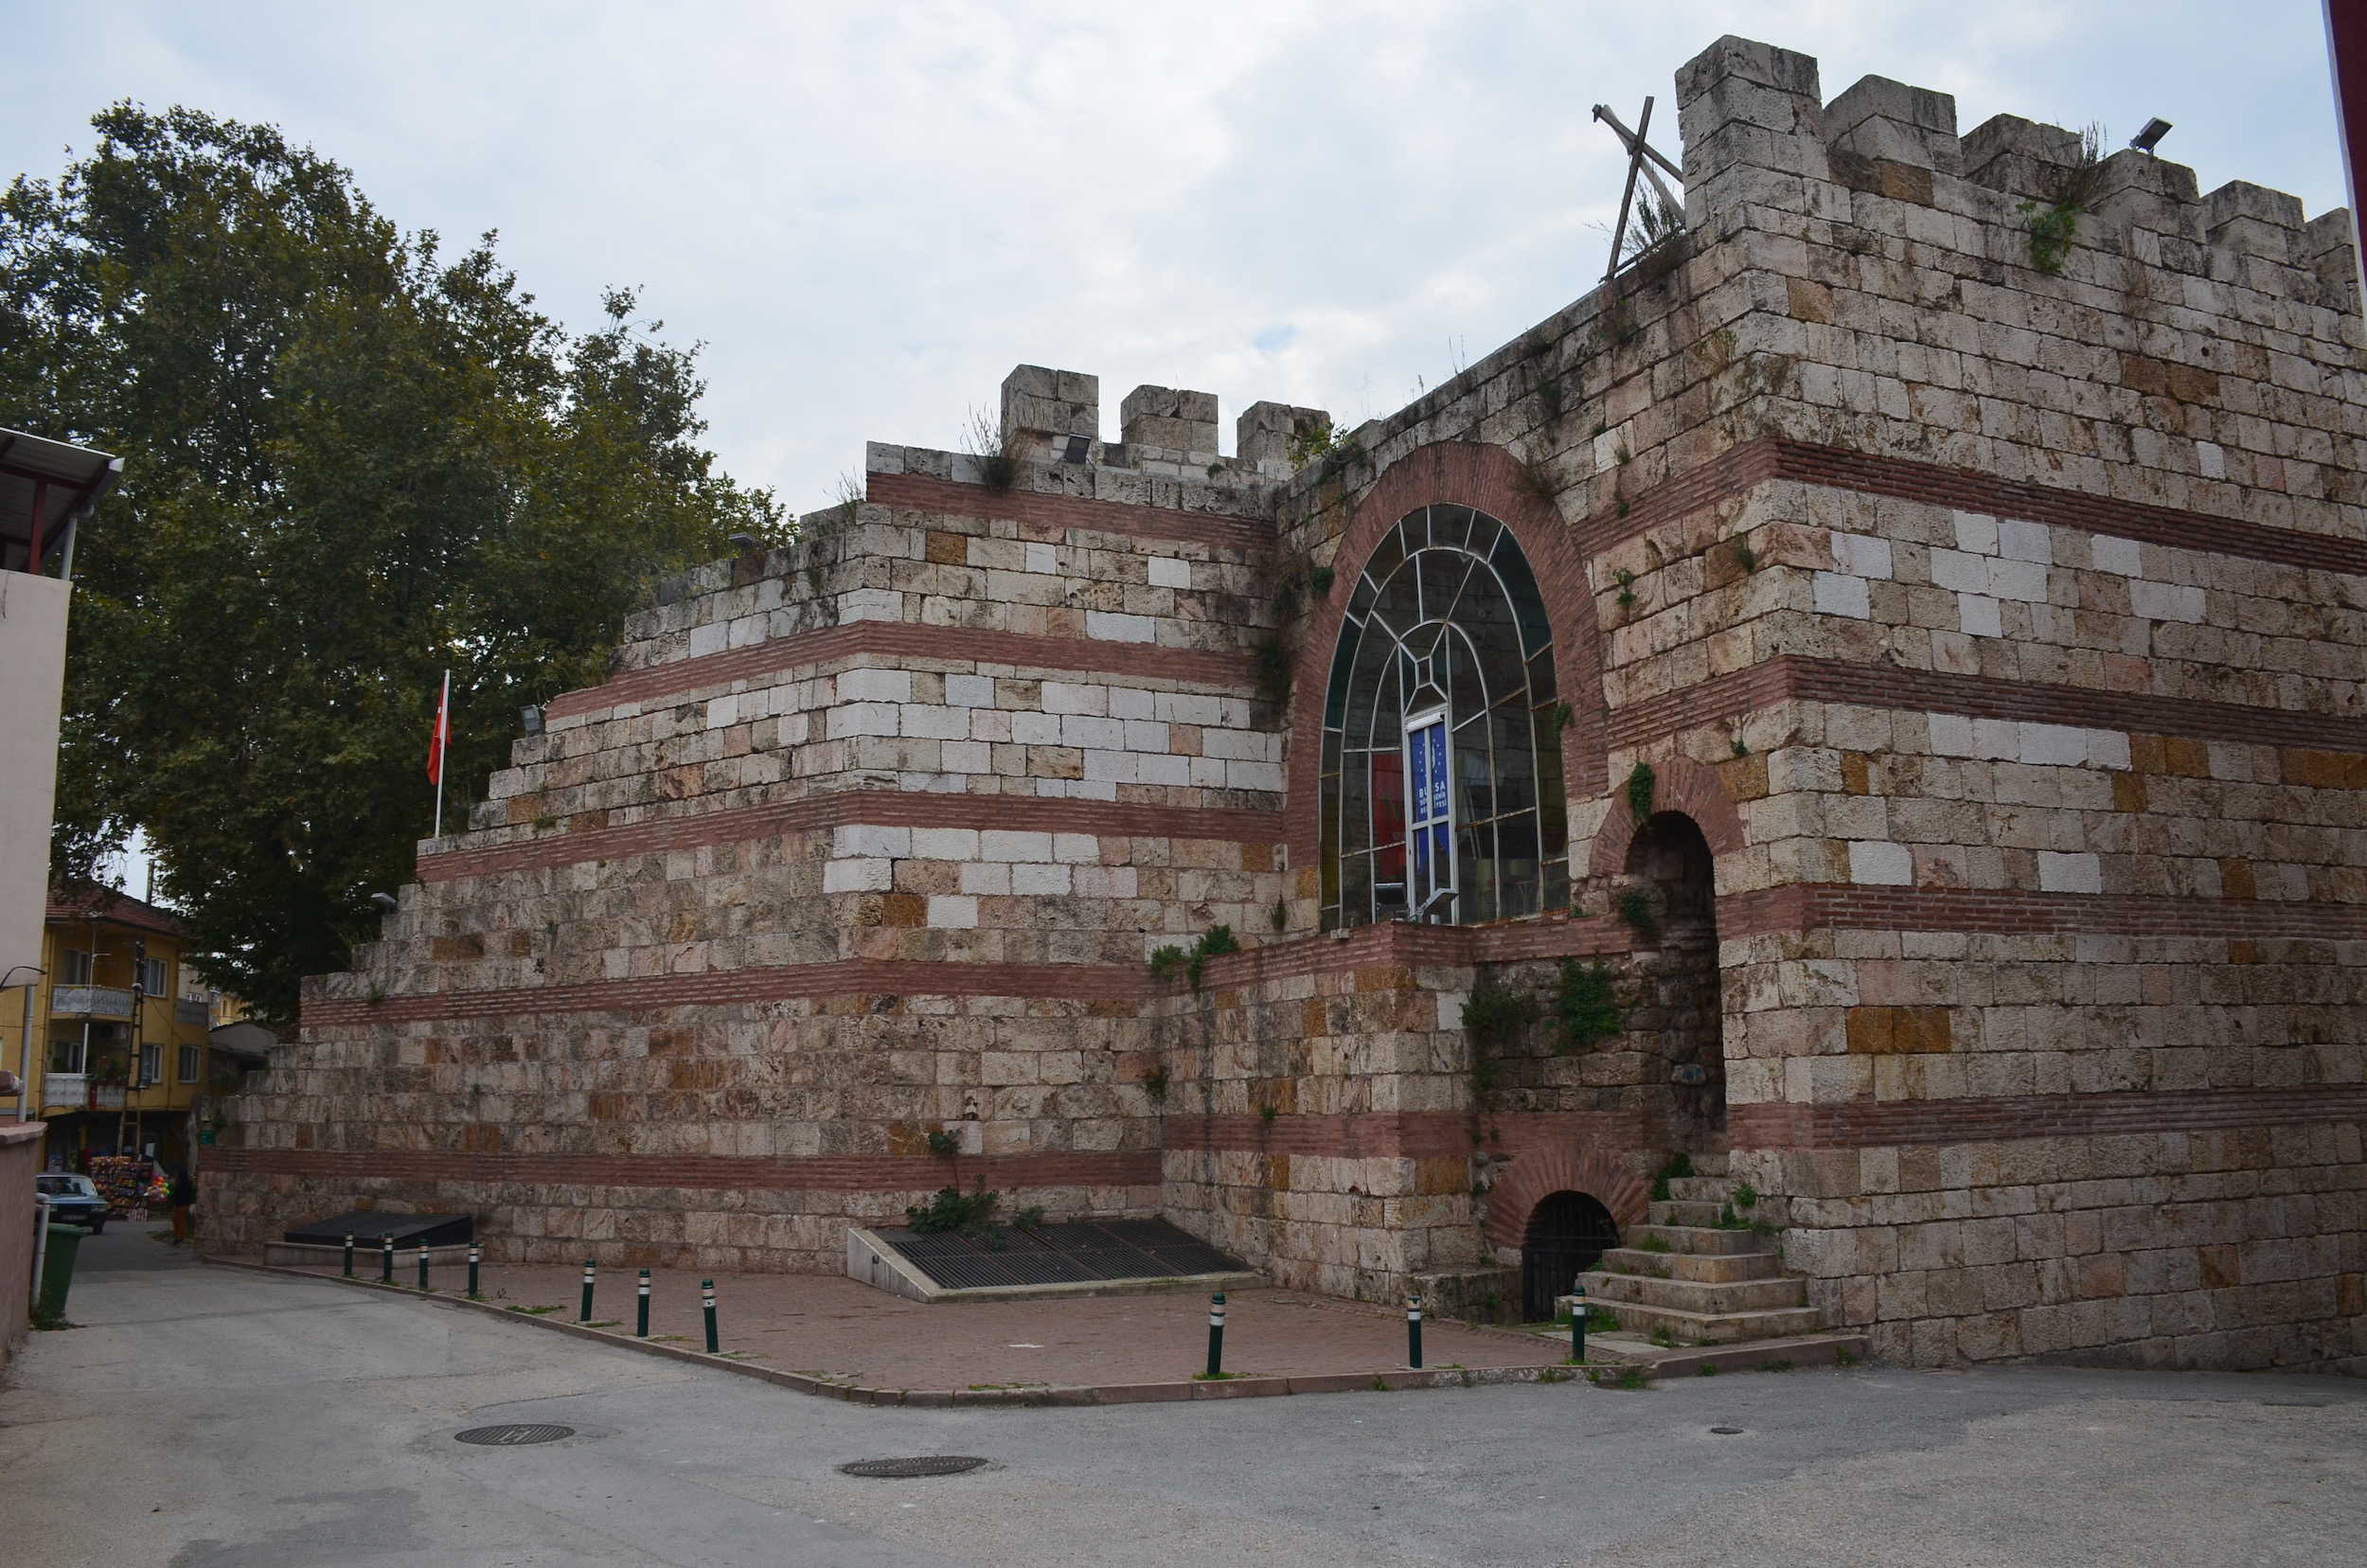 Conquest Gate on the walls of Bursa Castle in Bursa, Turkey